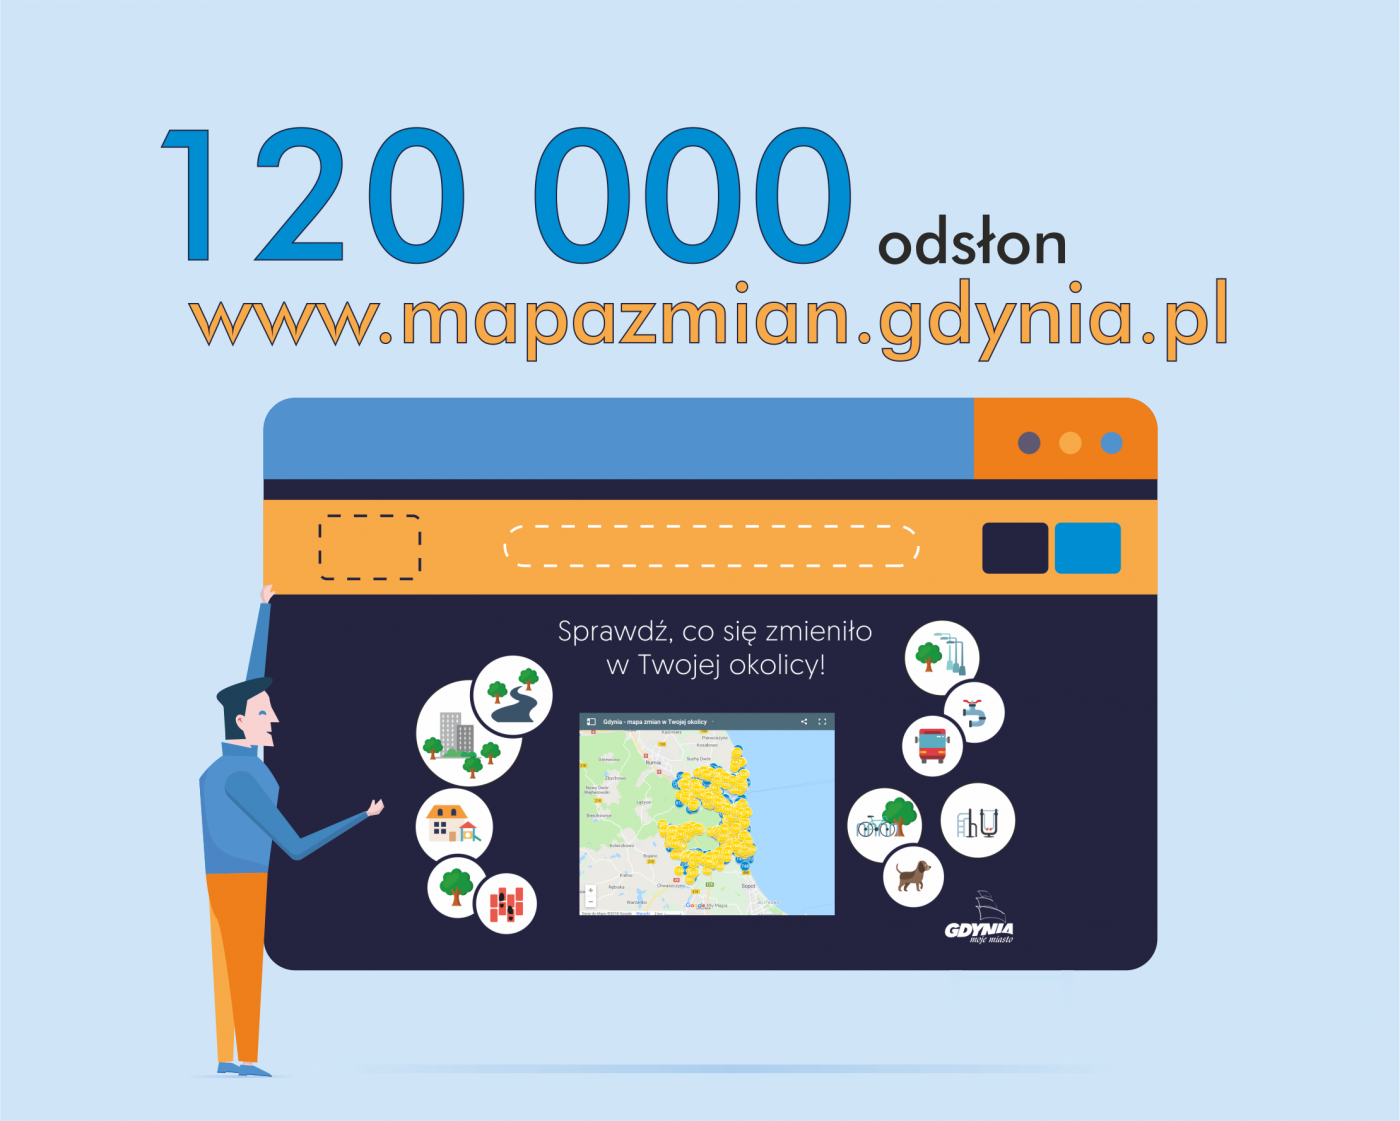 Mapa zmian w Gdyni ma już 120 000 wyświetleń 